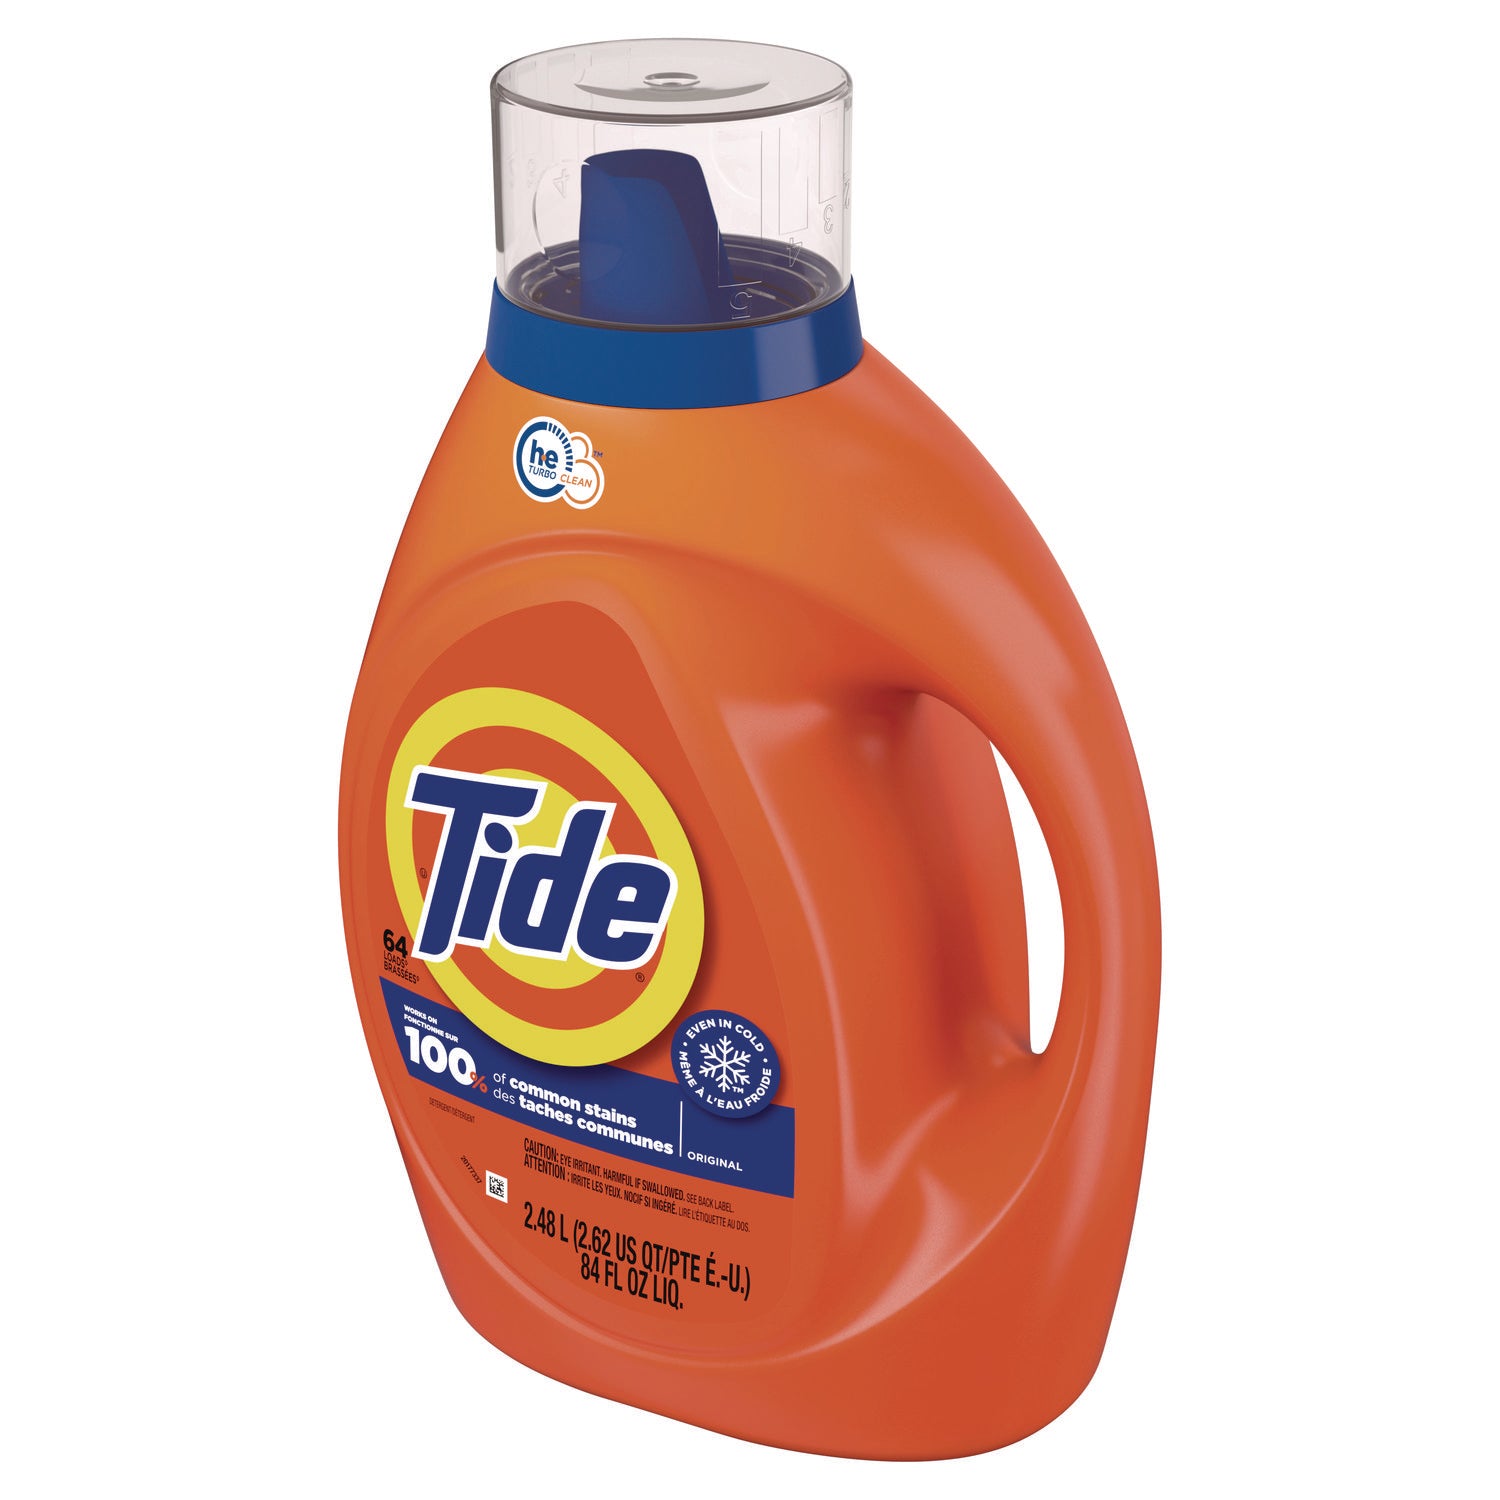 he-laundry-detergent-original-scent-liquid-64-loads-84-oz-bottle-4-carton_pgc12110ct - 3